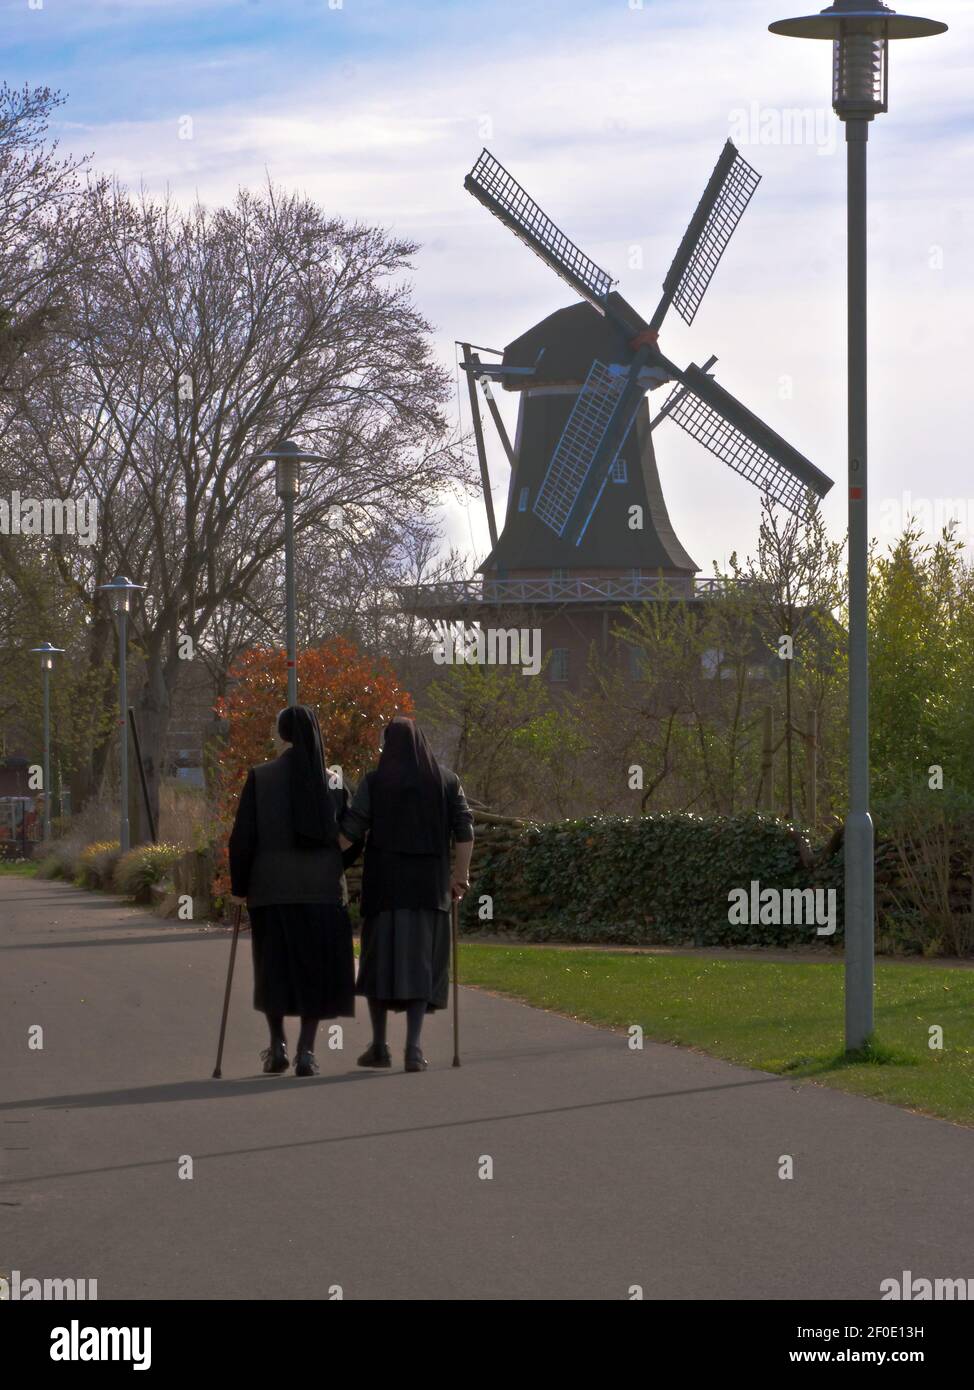 Spaziergang vor der Windmühle Foto Stock